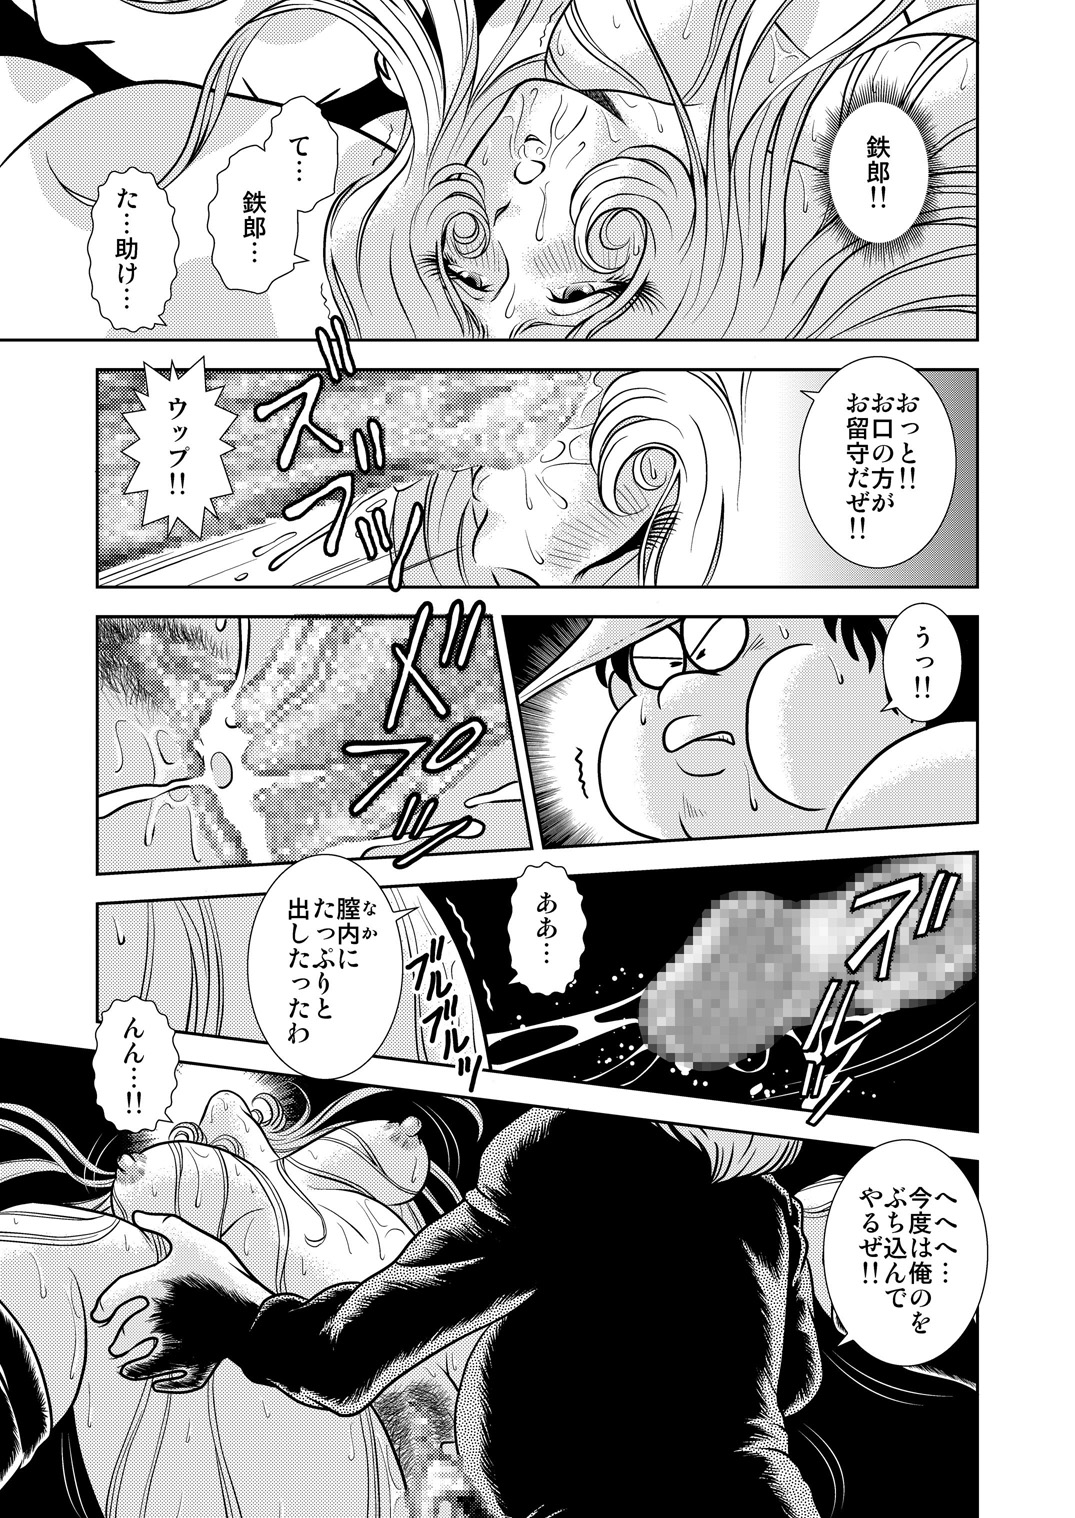 [かぐや姫] Maetel Story 7 (銀河鉄道999)